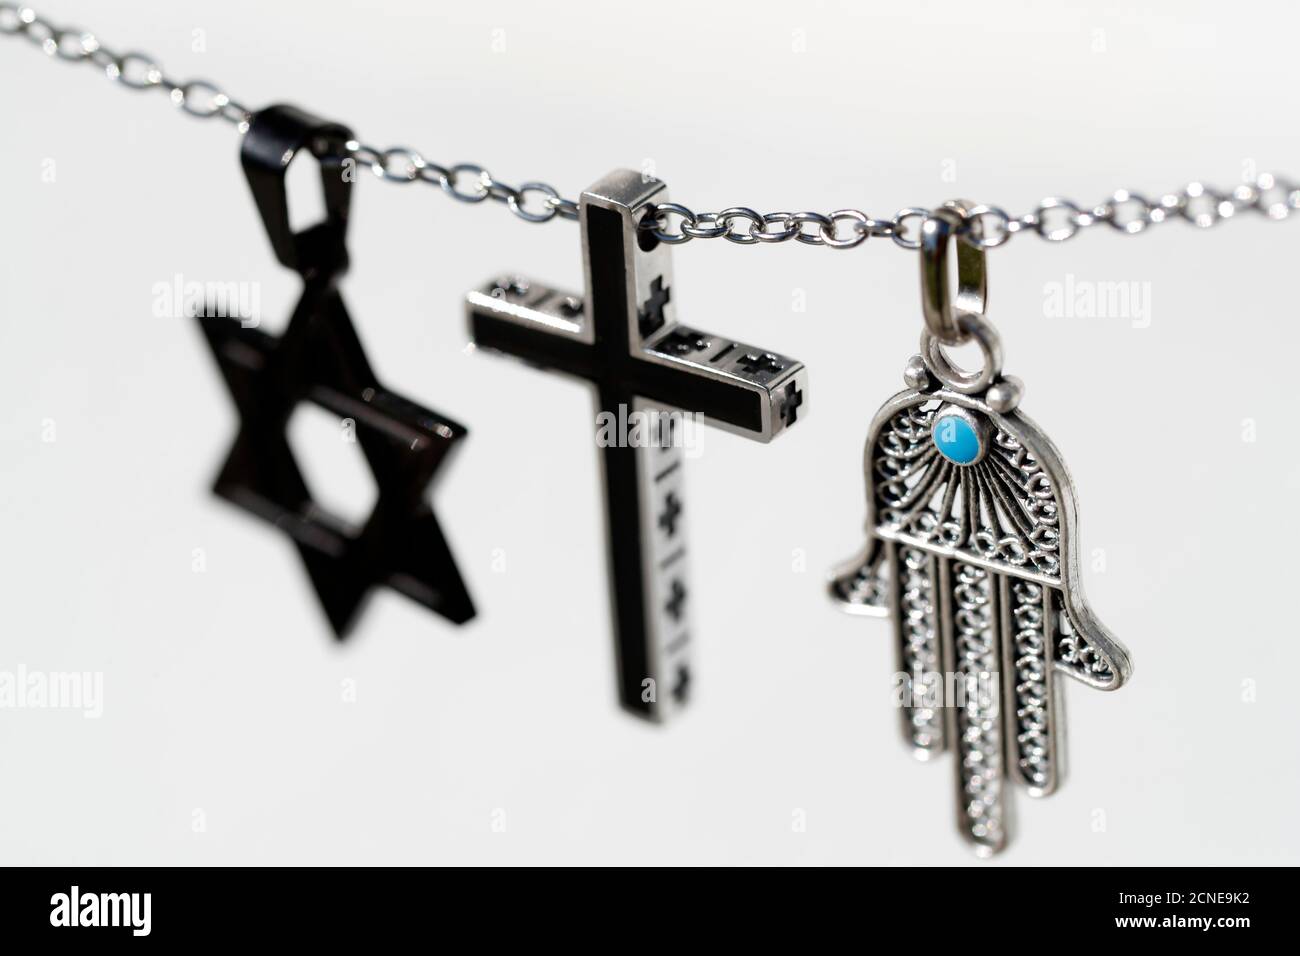 Religiöse Symbole des Christentums, Islam und Judentum, die drei monotheistischen Religionen, interreligiöser Dialog, Frankreich, Europa Stockfoto